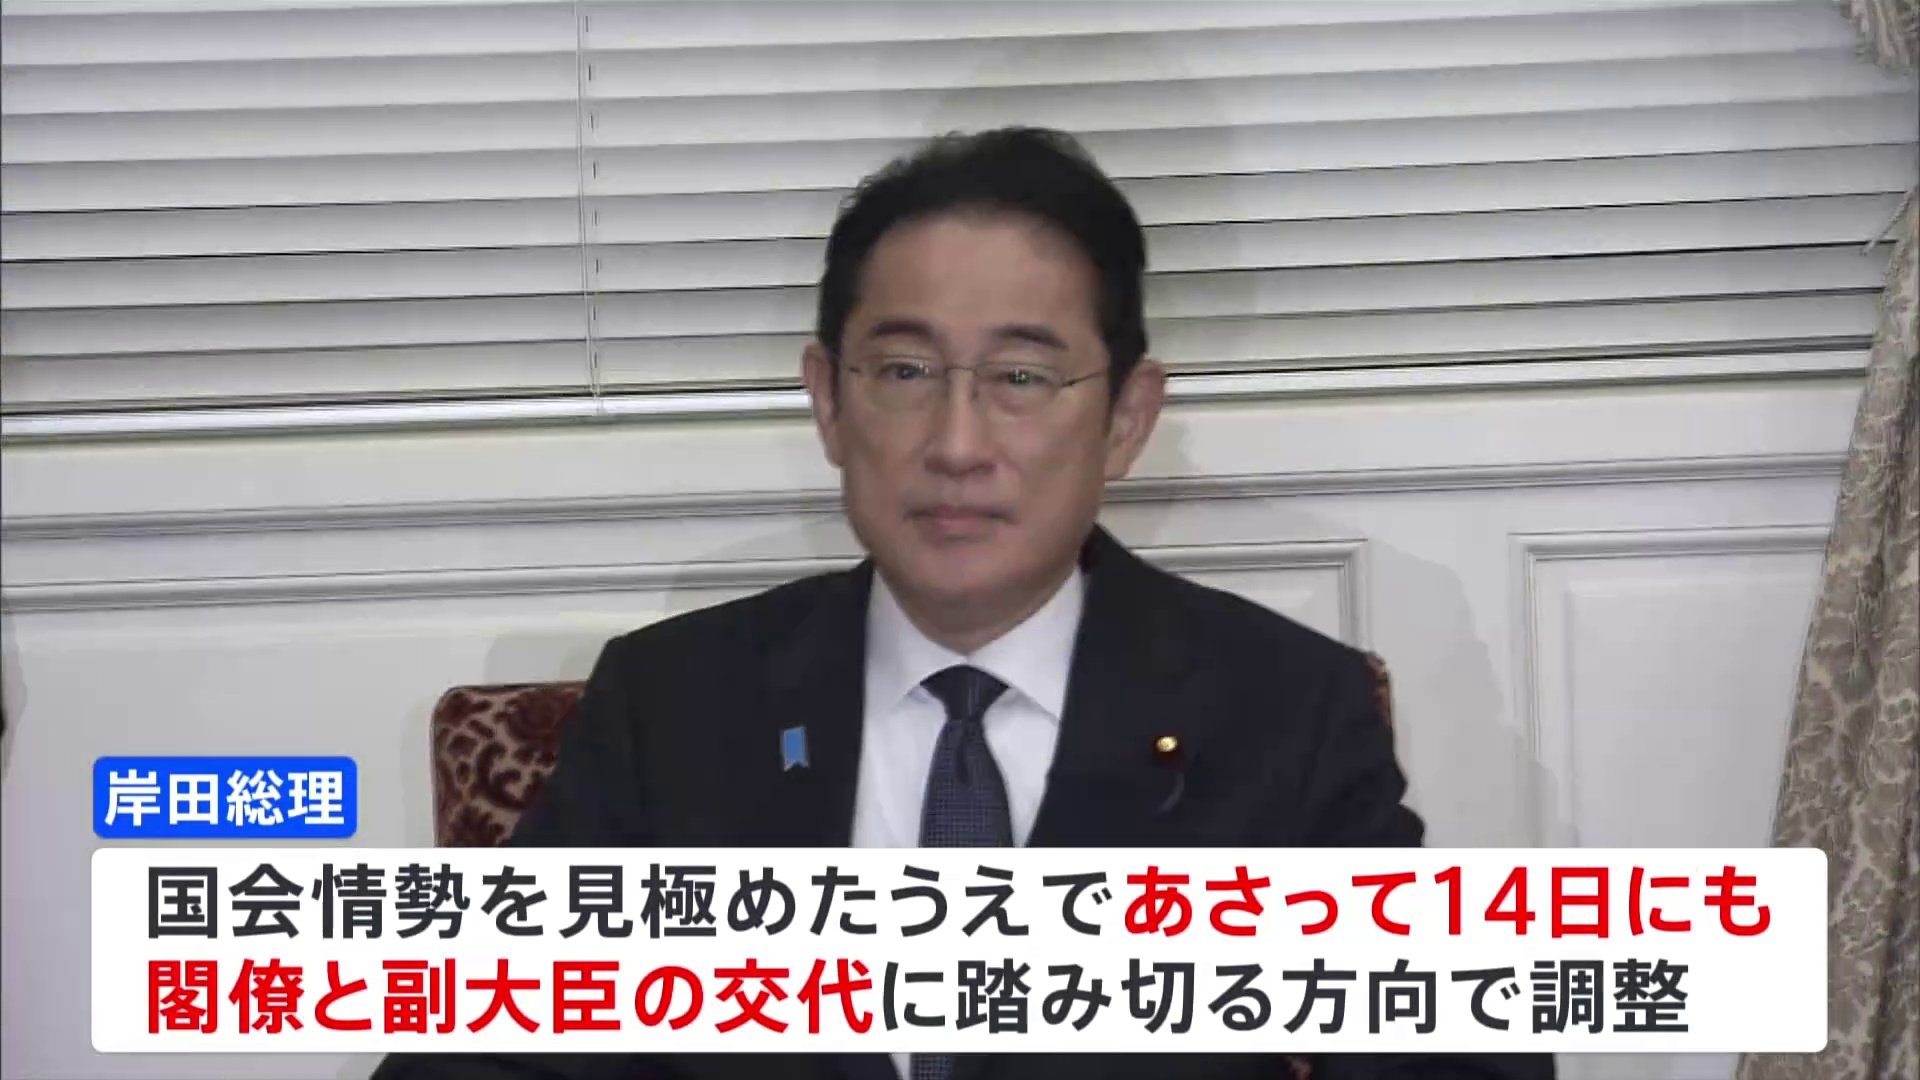 岸田総理、14日にも安倍派閣僚を交代へ 政務官は慎重に検討 きょう官房長官の不信任案採決